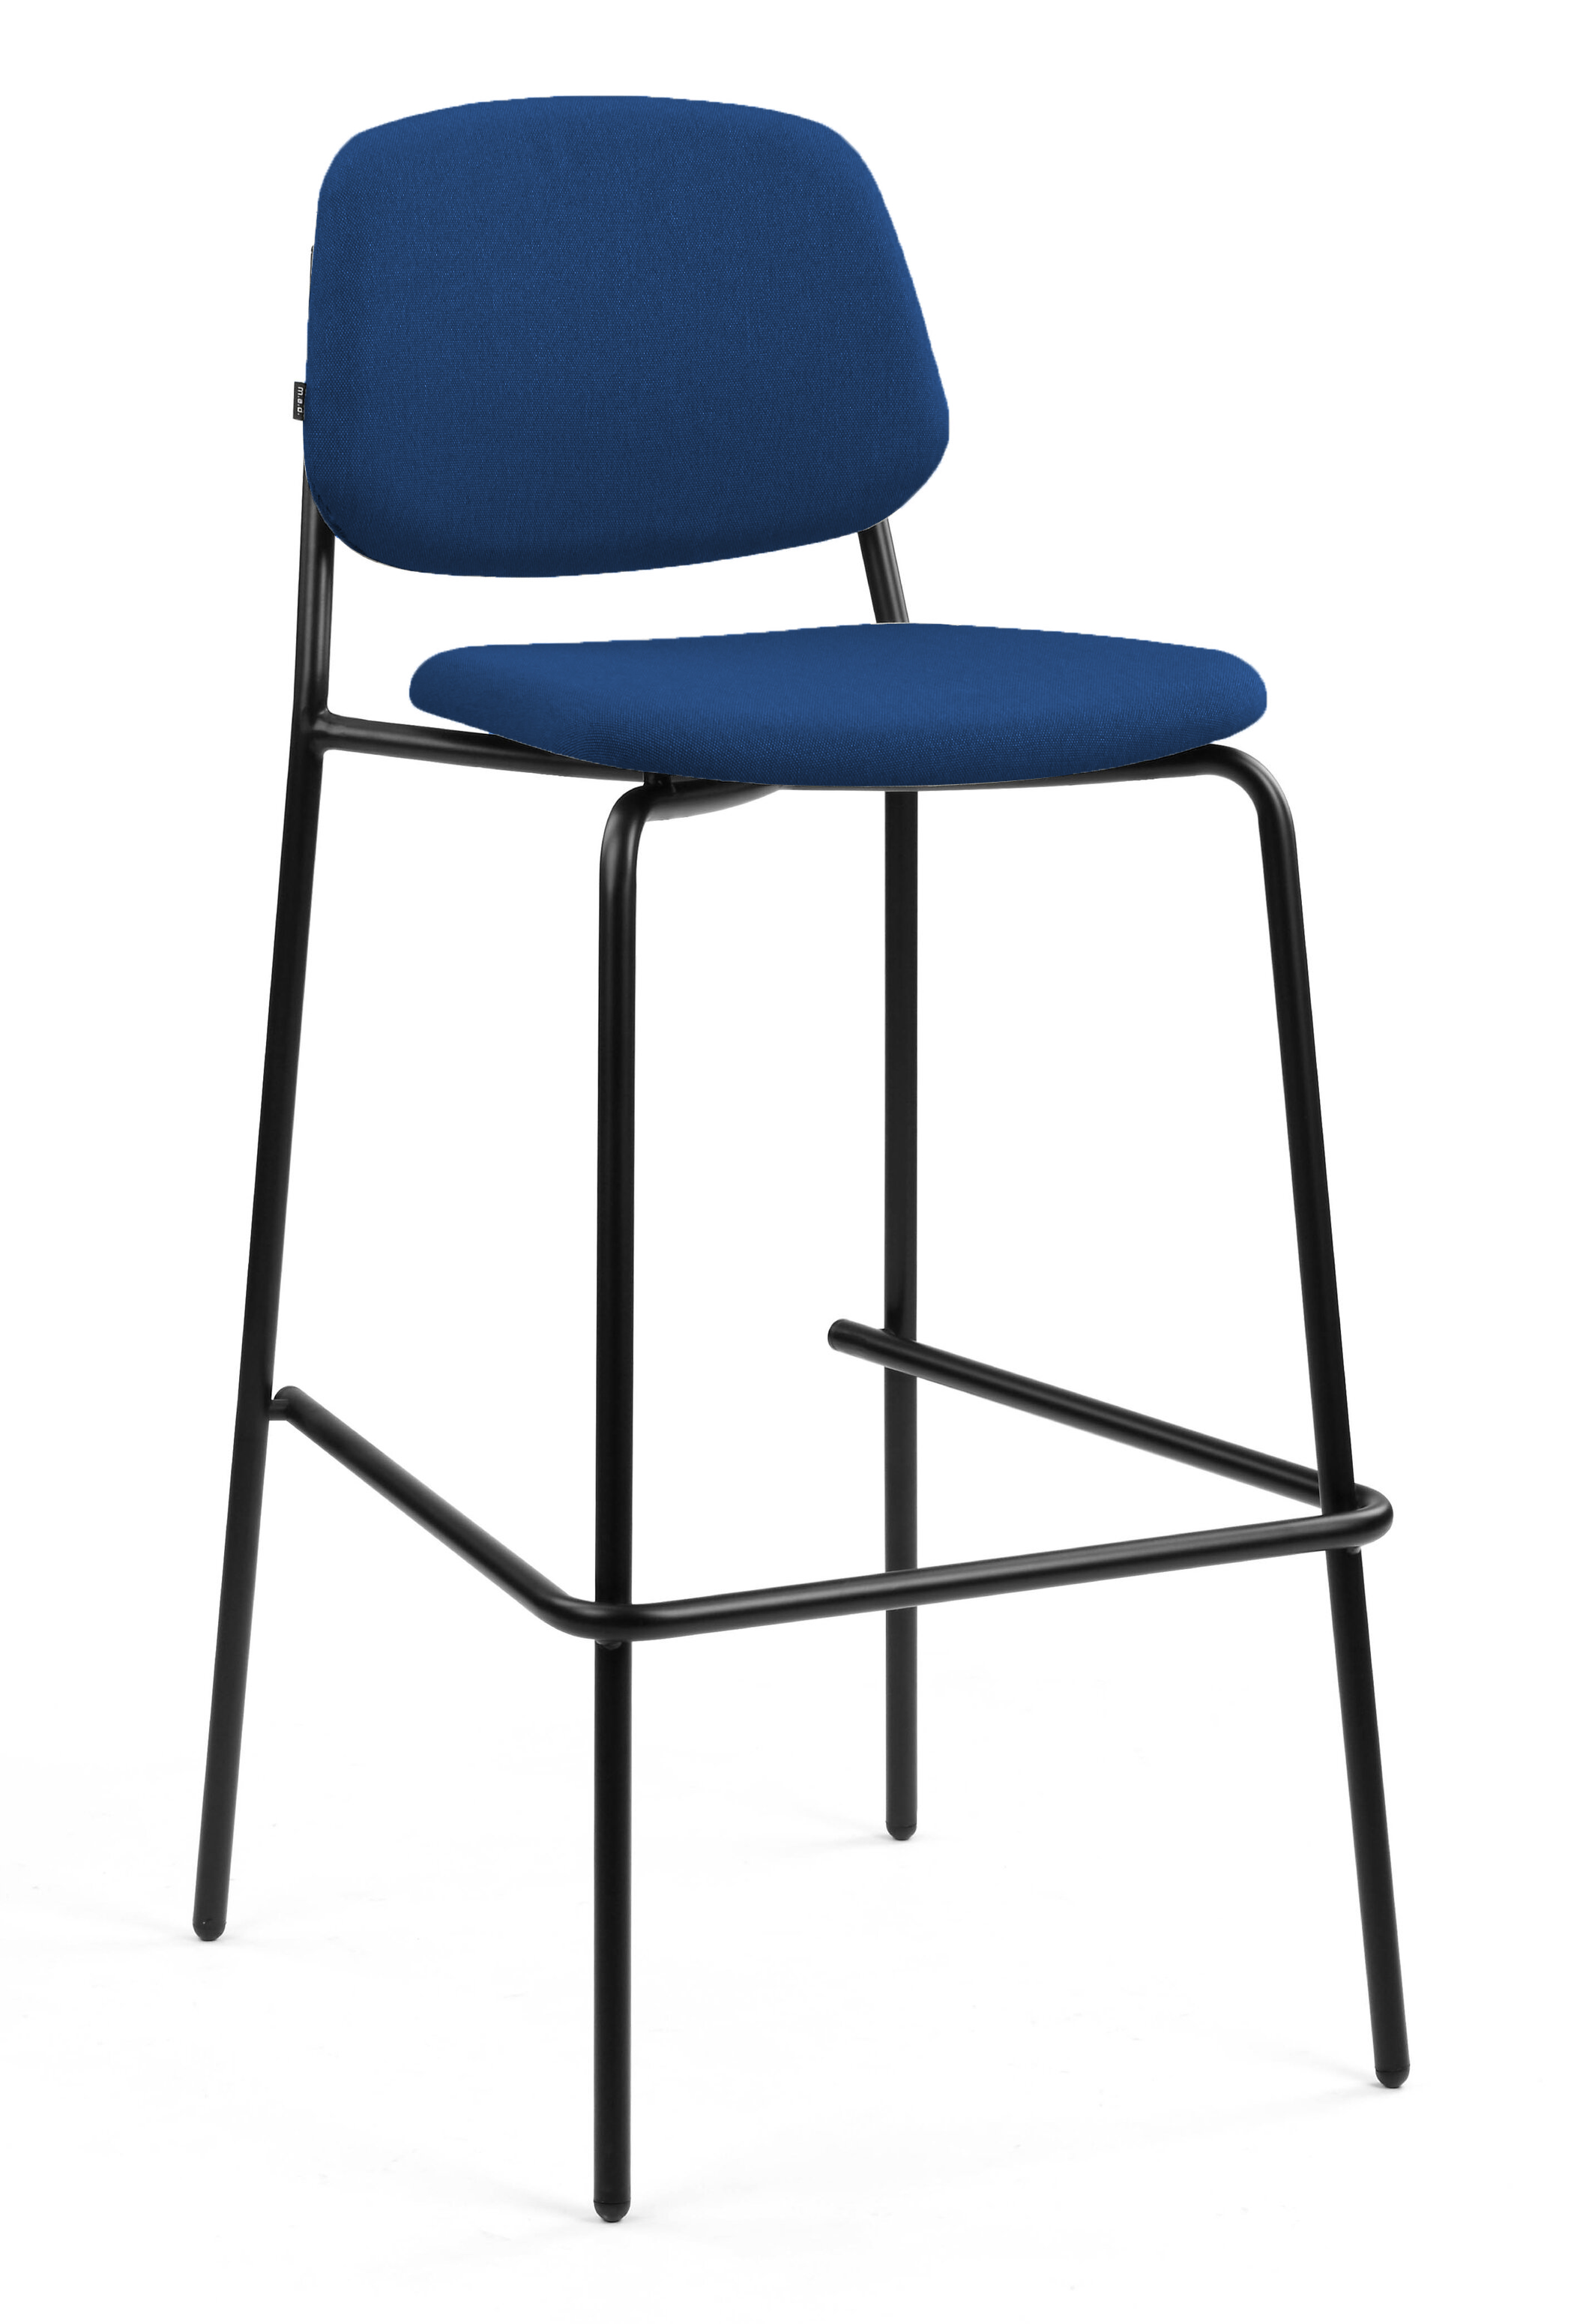 WS - Platform high stool - ERA CSE40 MATURITY